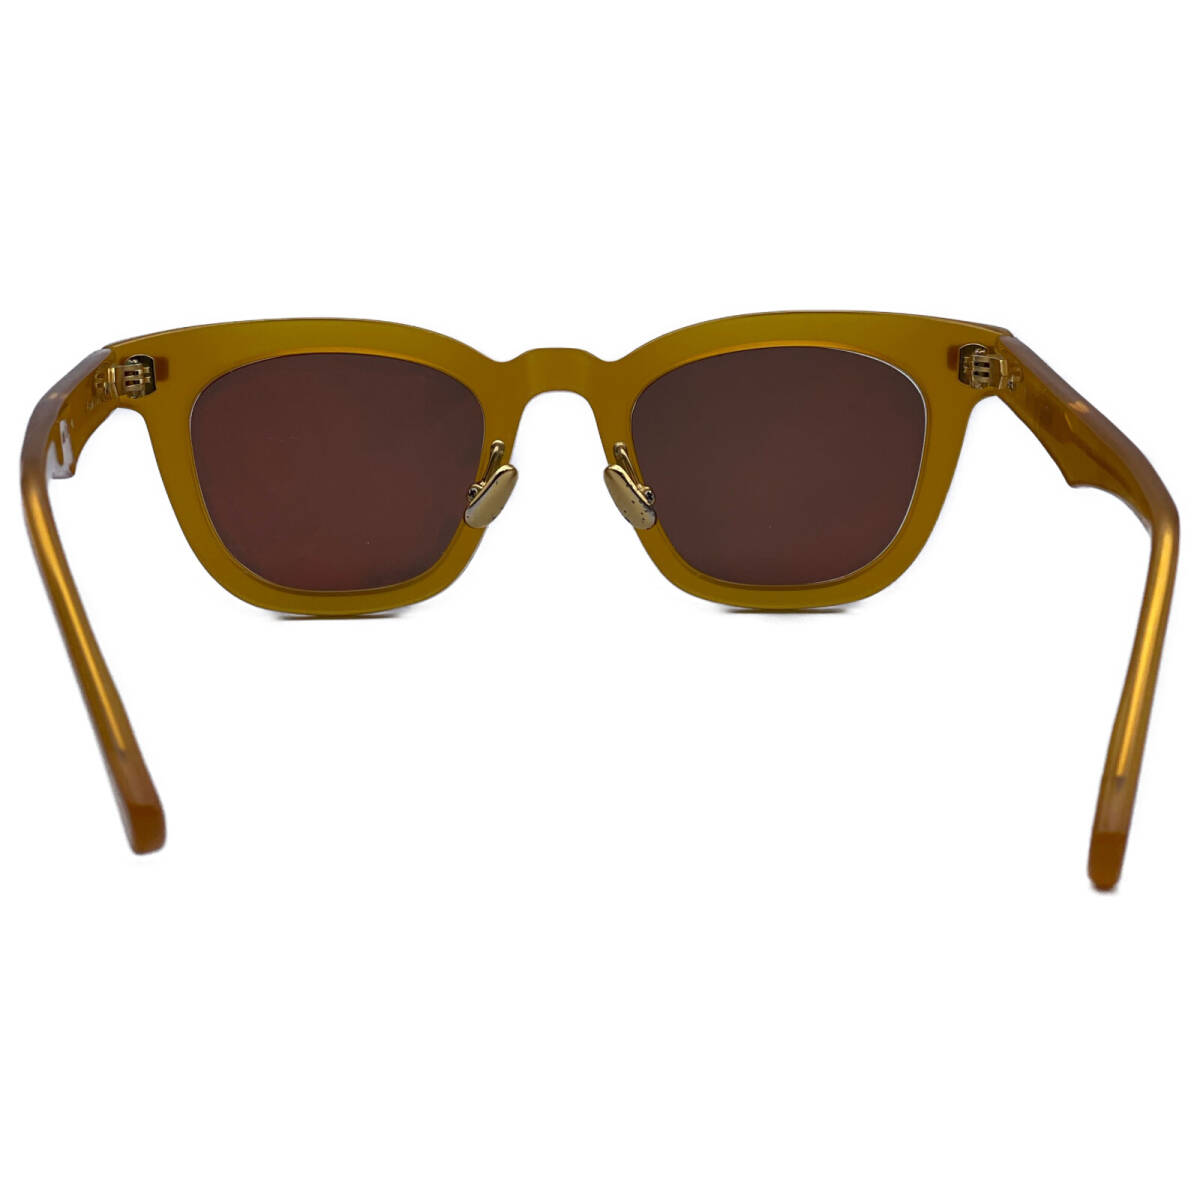 1 jpy NATIVE SONSneitib sun z yellow kowalskikowaru ski glasses frame sunglasses 47.5*22-14